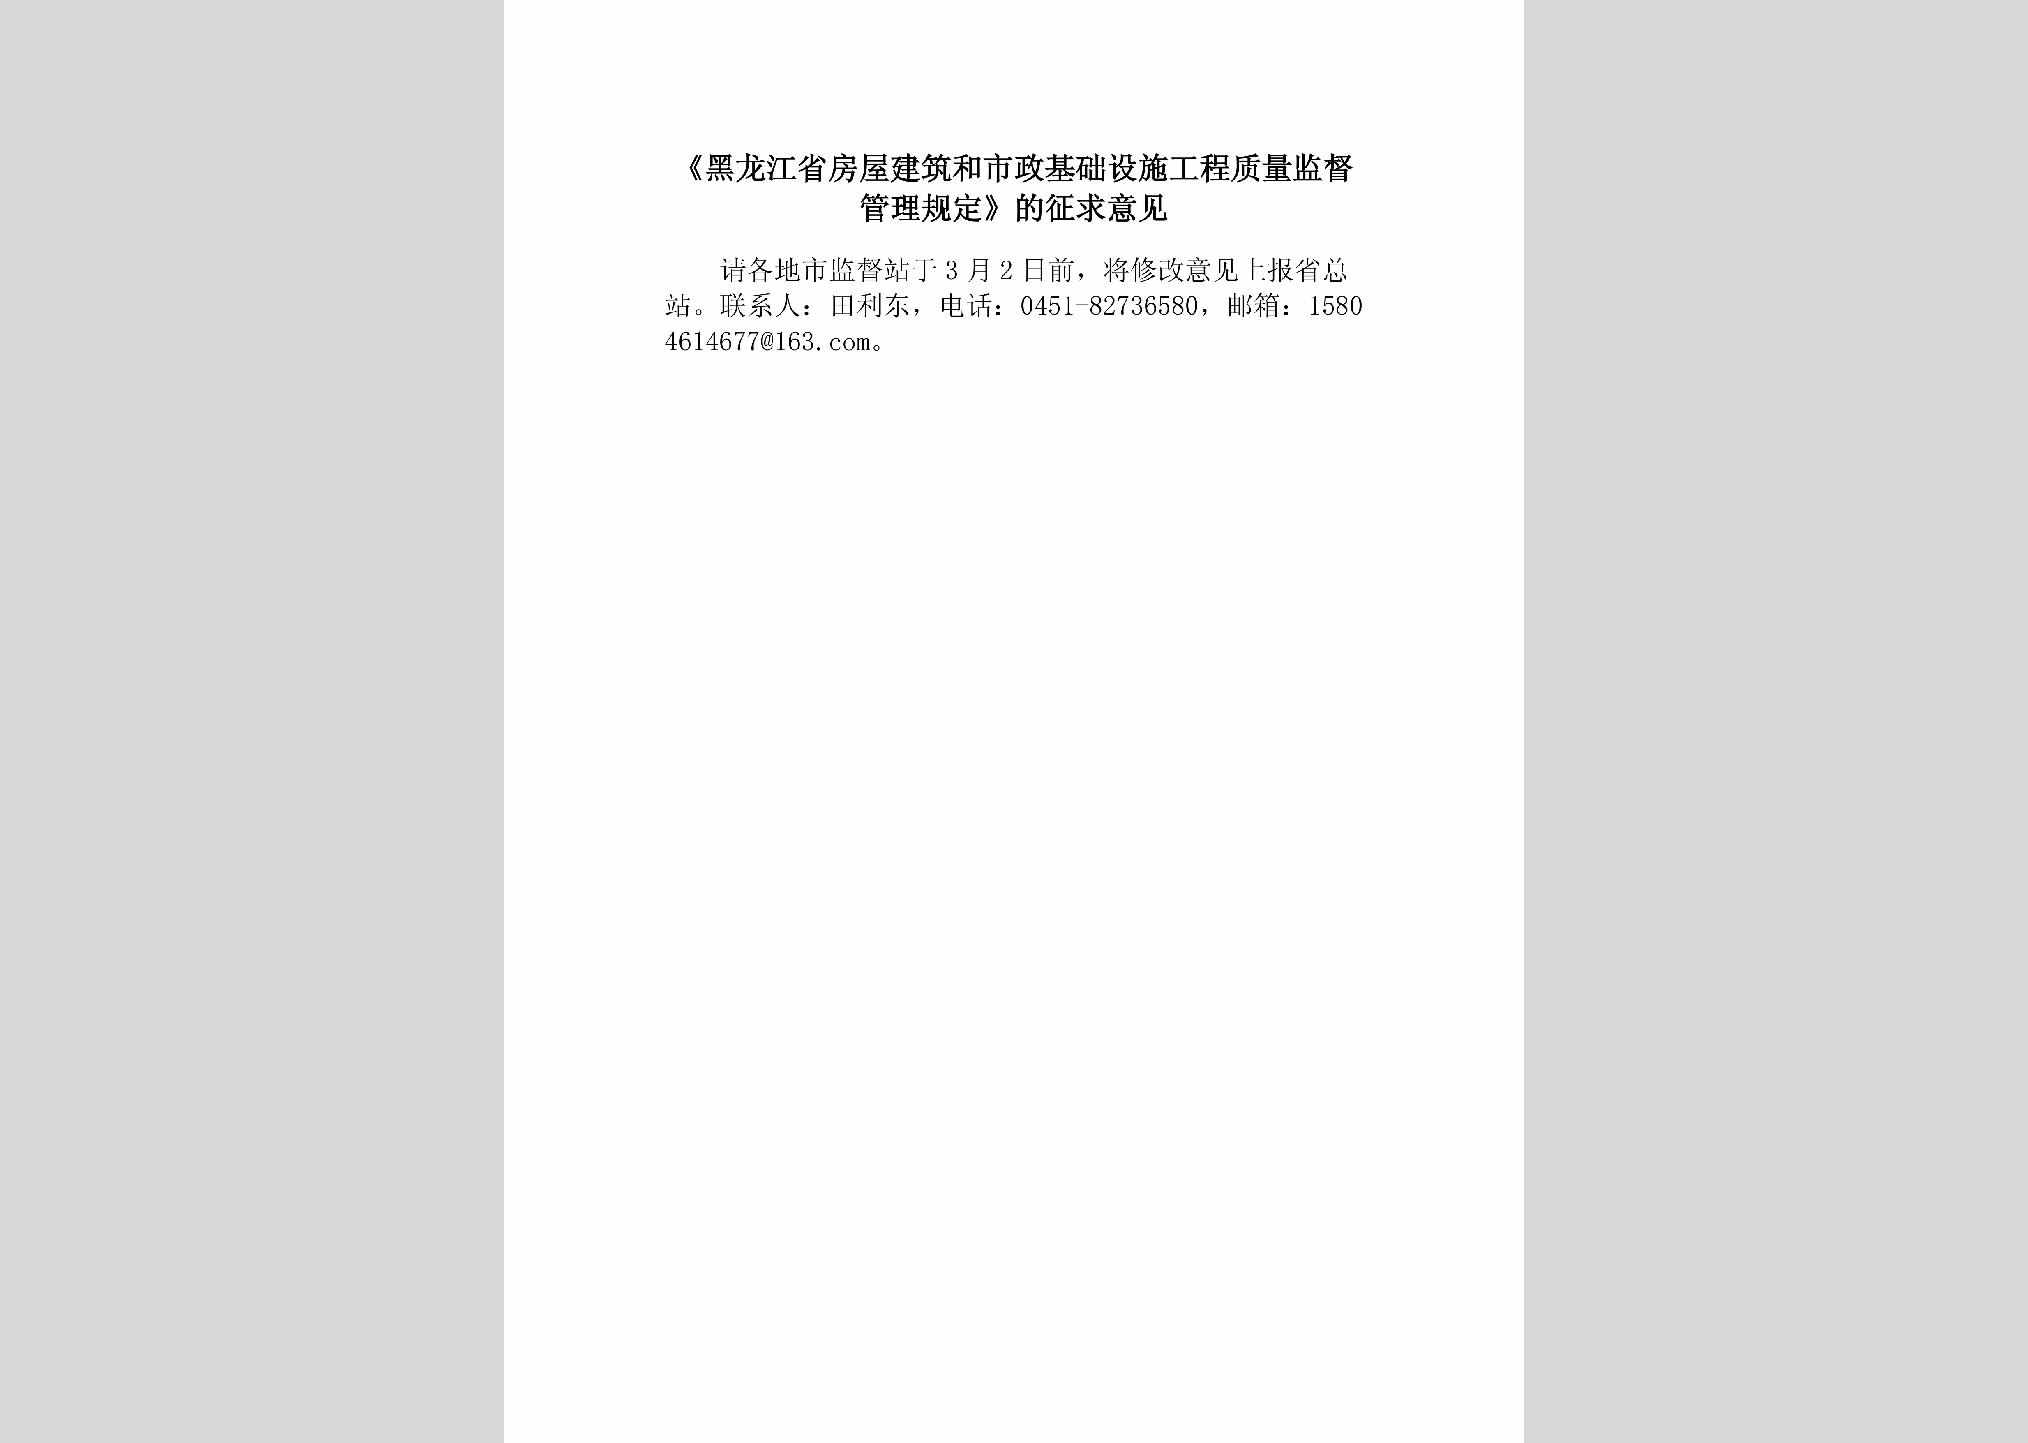 HLJ-FWSZZLJD-2018：《黑龙江省房屋建筑和市政基础设施工程质量监督管理规定》的征求意见